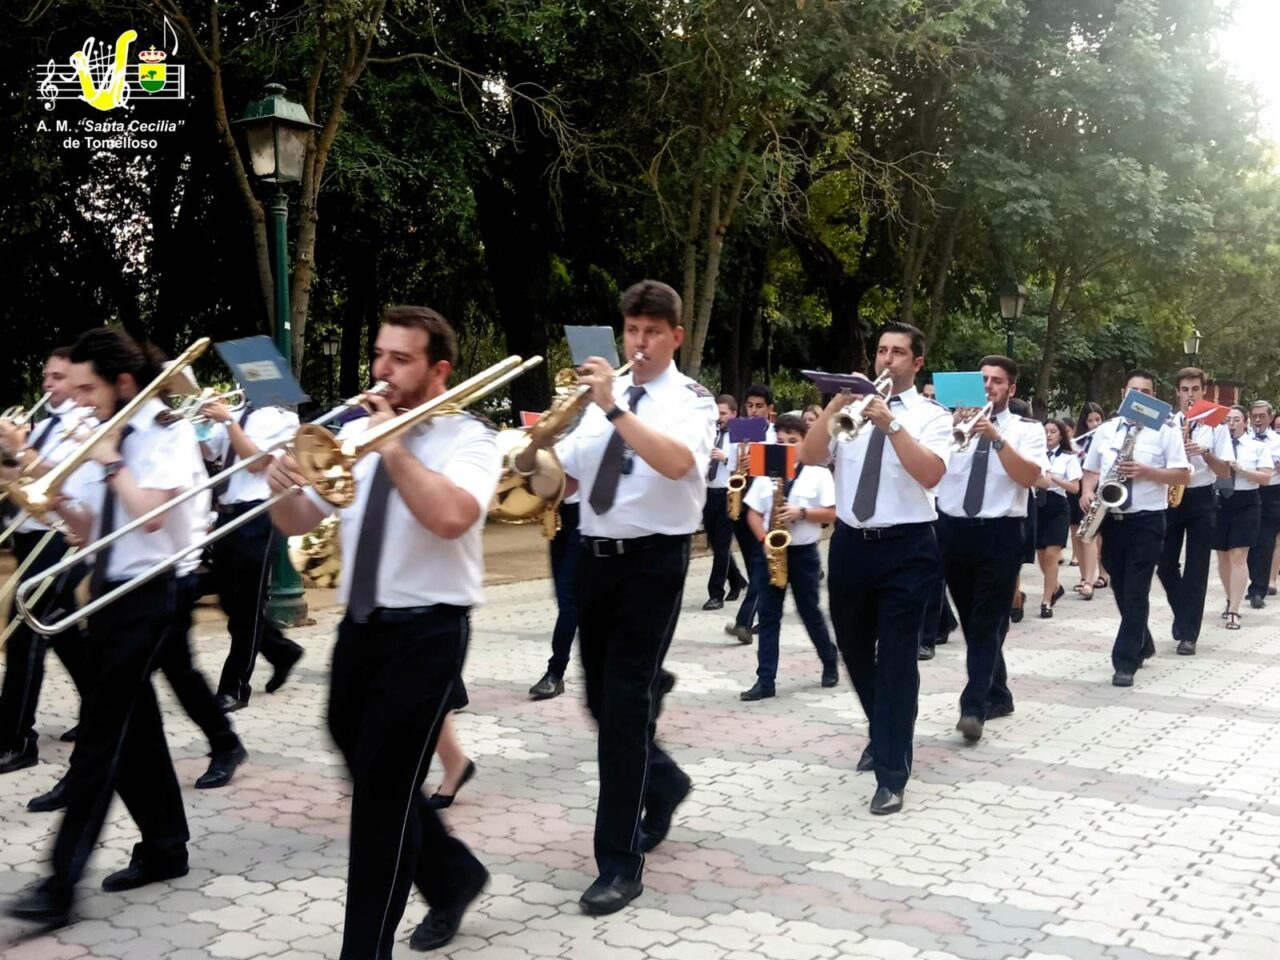 La Banda de la A.M. Santa Cecilia retoma los Festivales en Talavera de la Reina